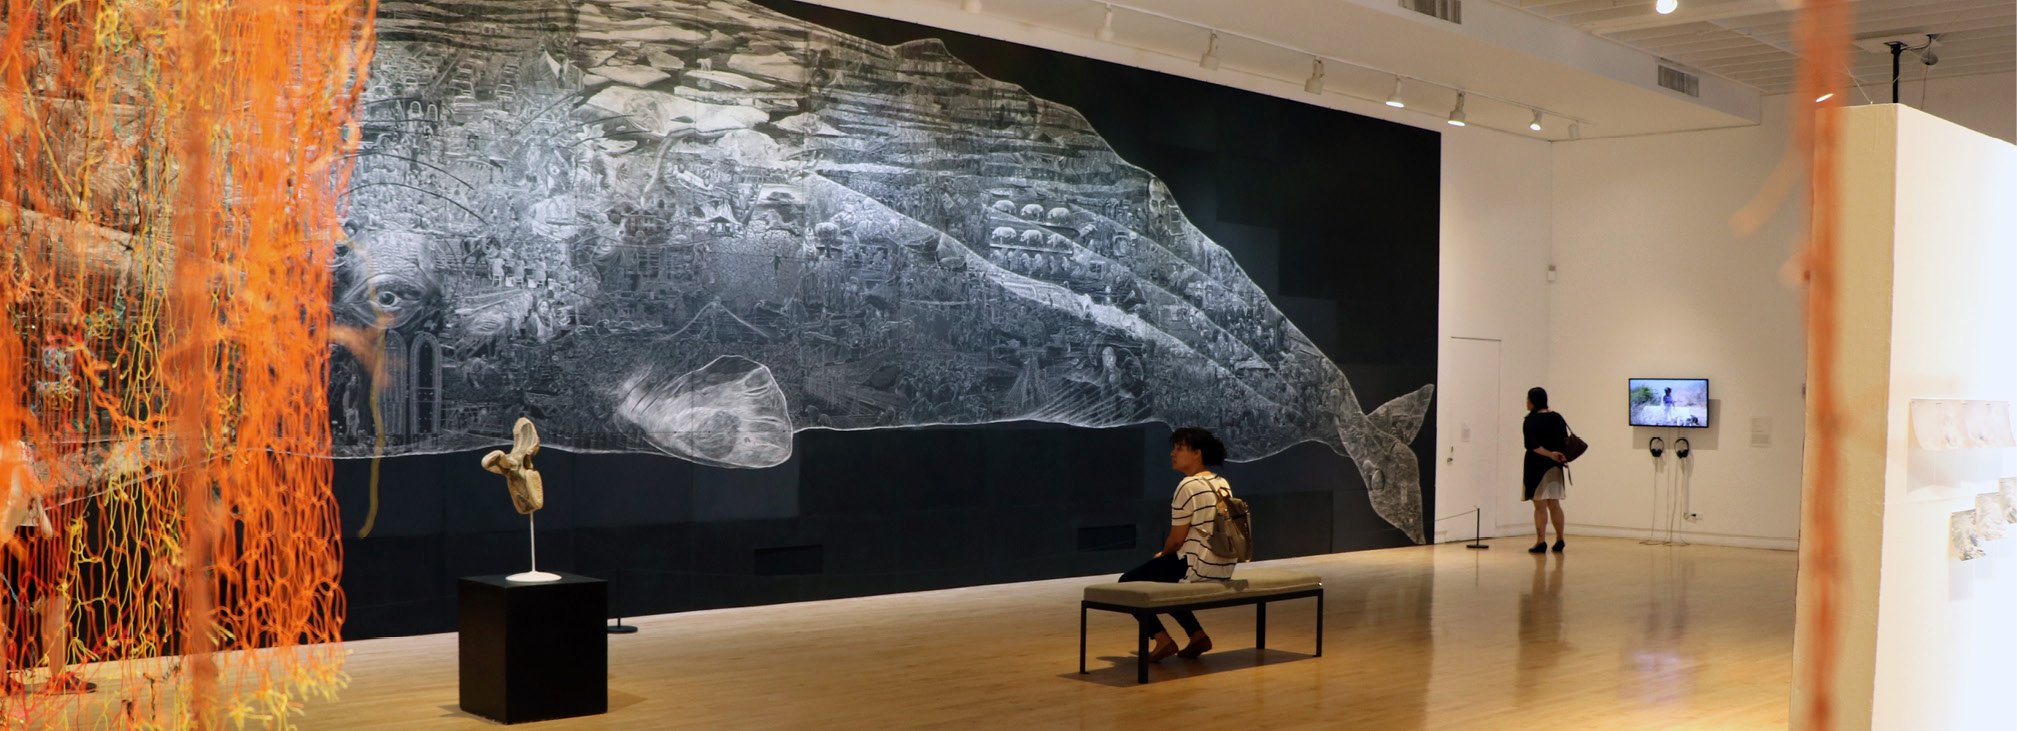 Richard Diebenkorns Work Returns to Art Center - Richmond 